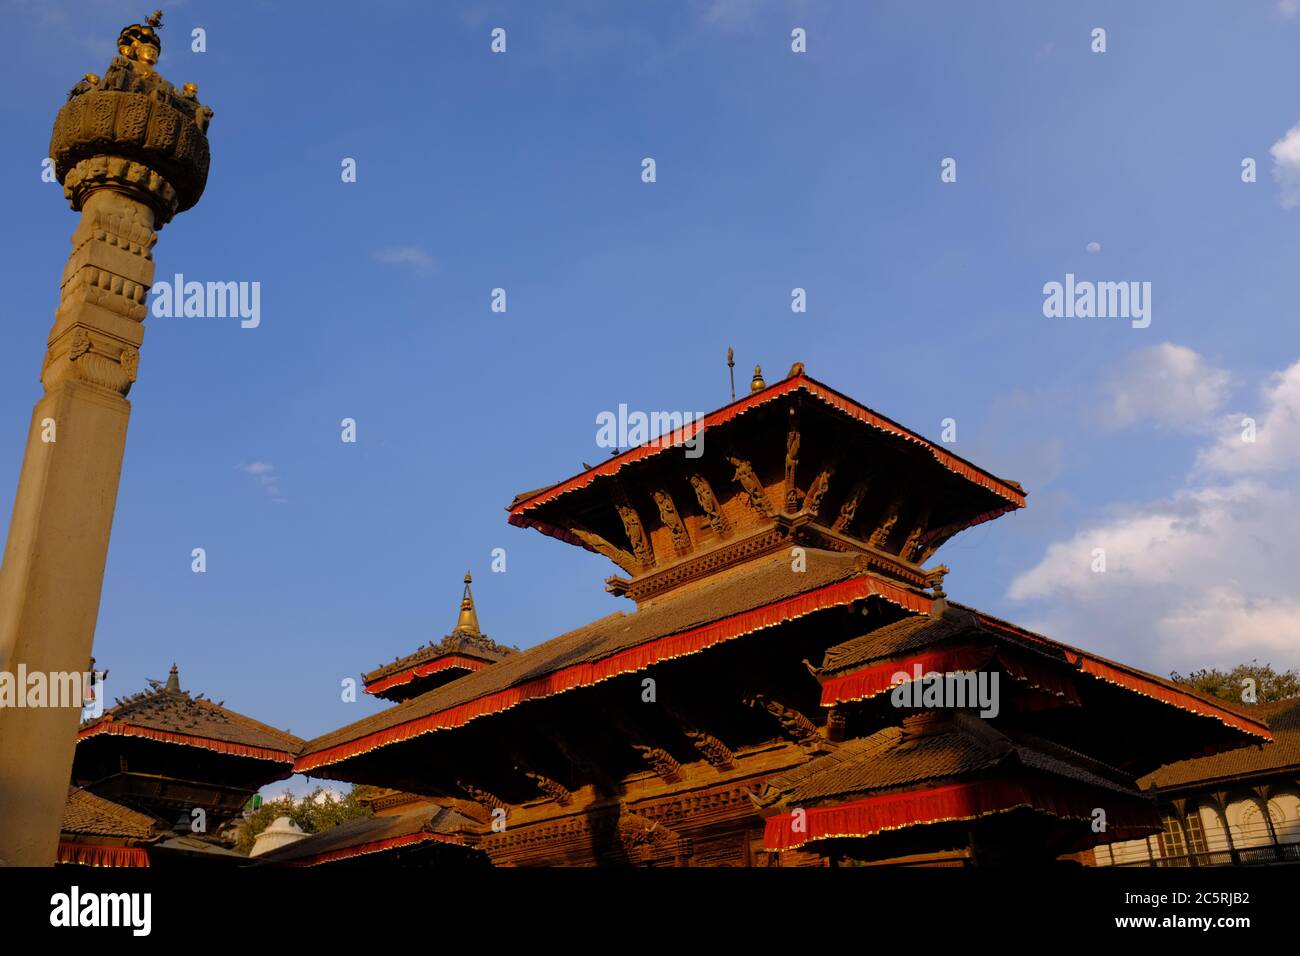 Un temple historique à l'intérieur de la place Kathmandu Durbar - un site classé au patrimoine mondial de l'UNESCO au Népal qui présente l'architecture népalaise. Banque D'Images